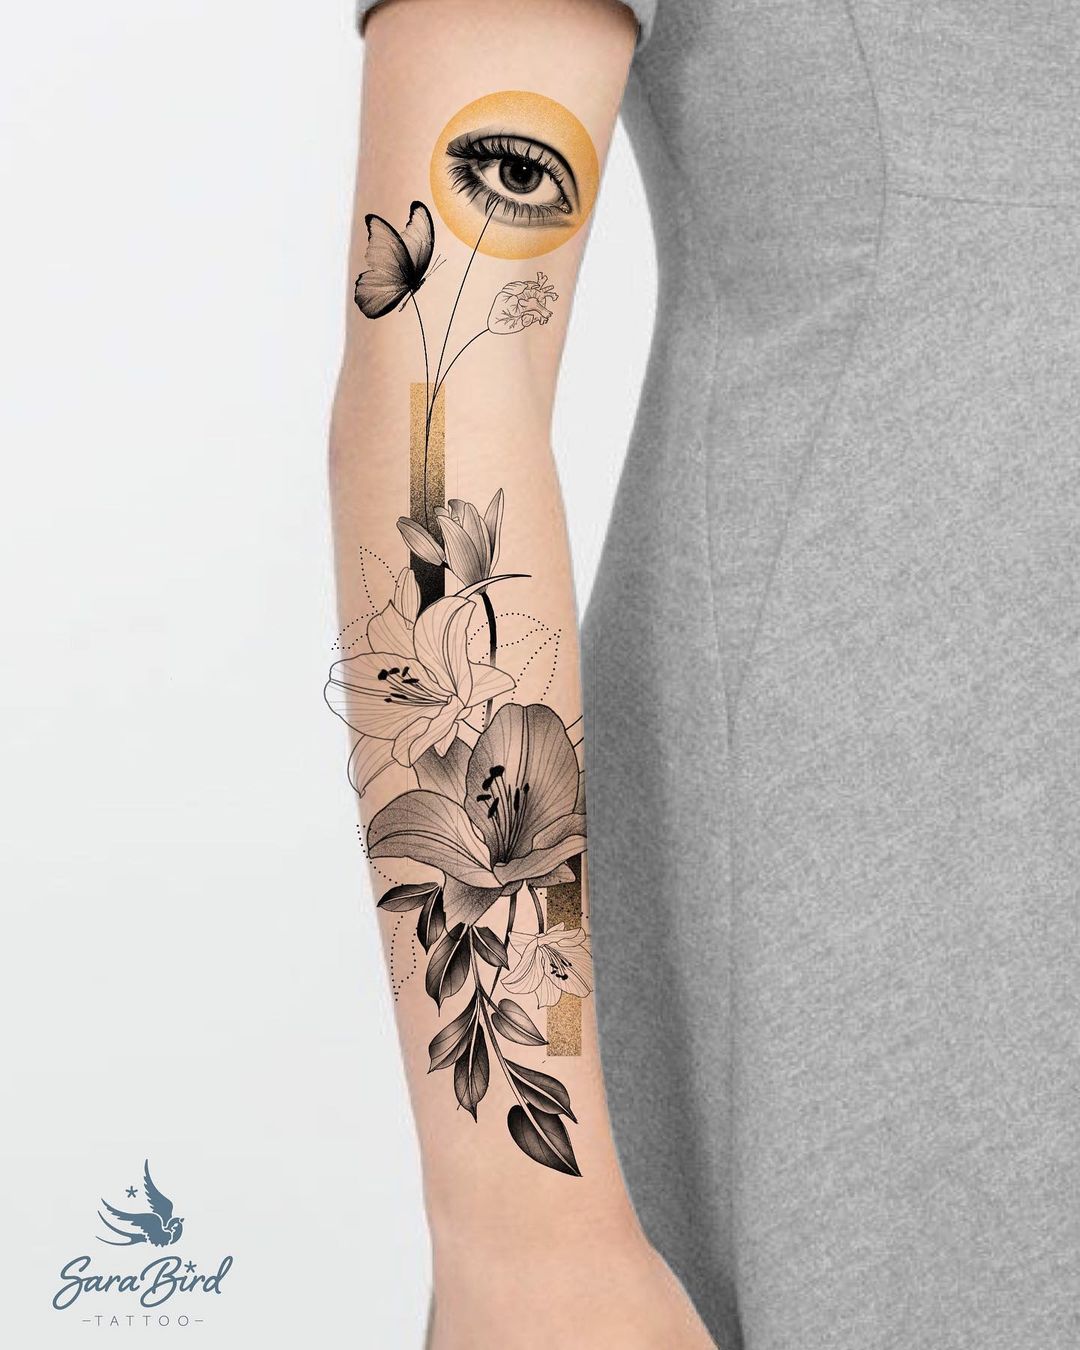 Sara -Mira dentro- Proyecto listo para tatuar. único y exclusivo